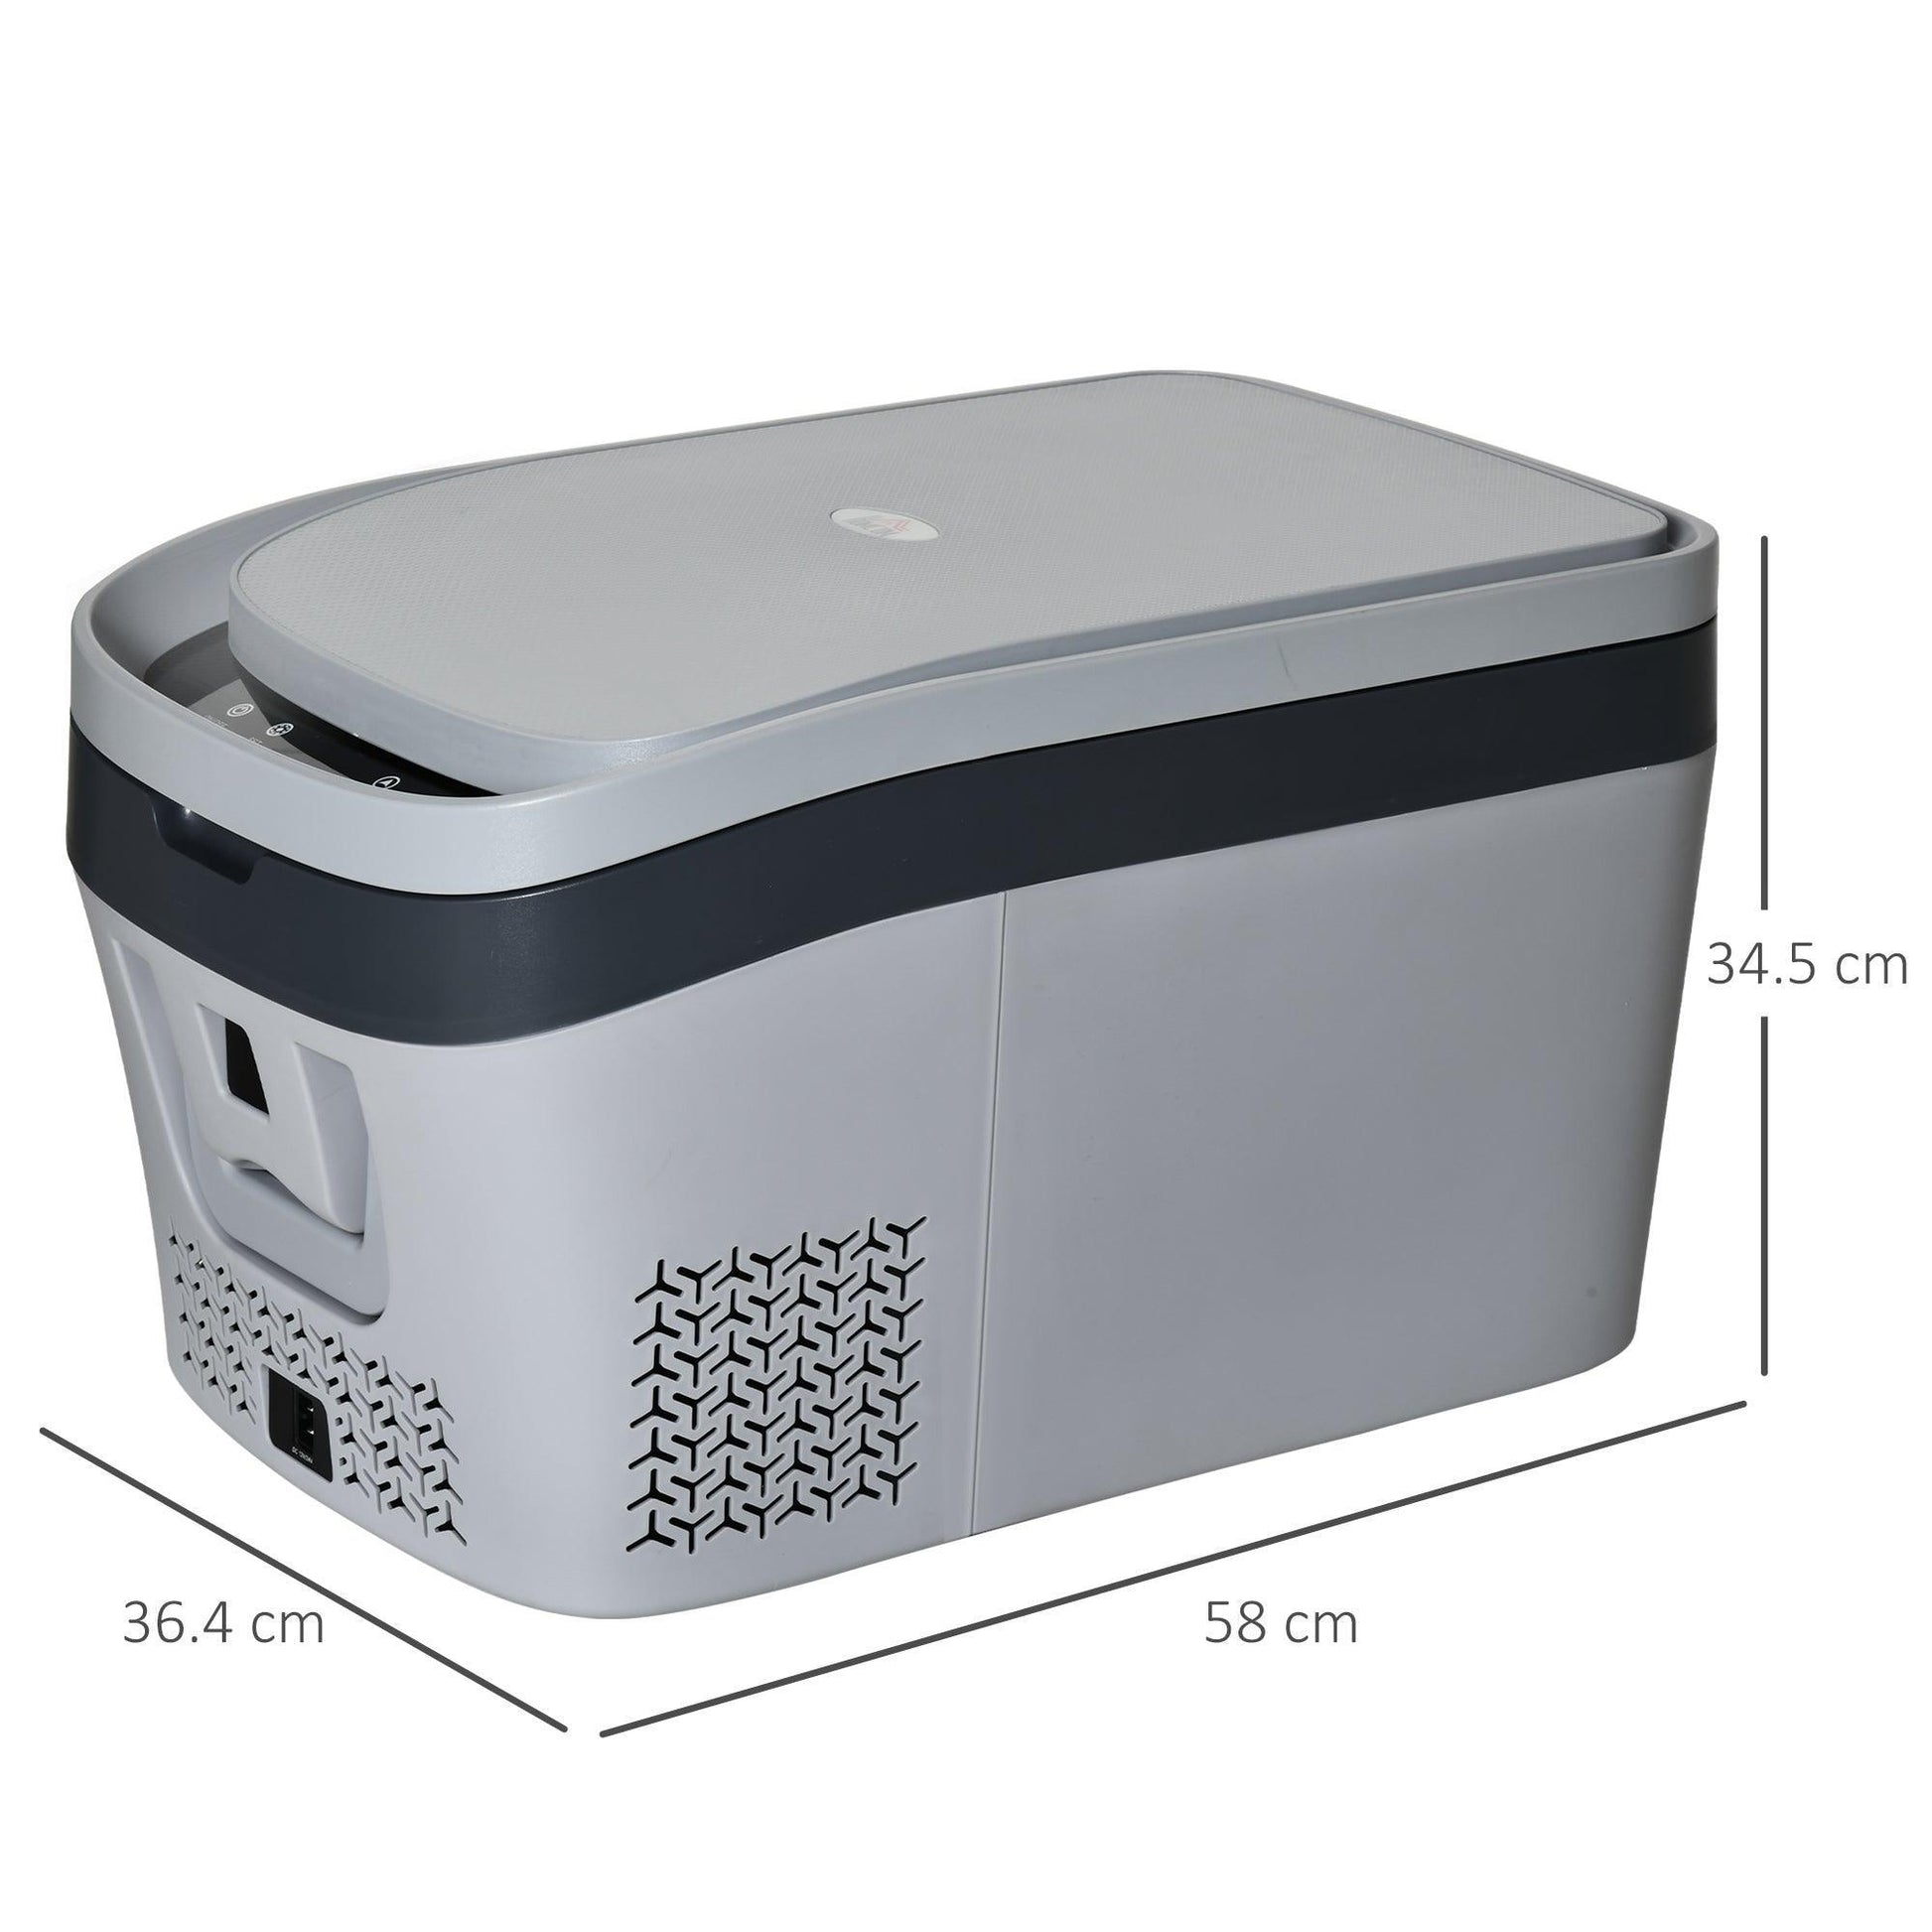 HOMCOM Car Refrigerator, Portable Cooler -18-20°C - ALL4U RETAILER LTD